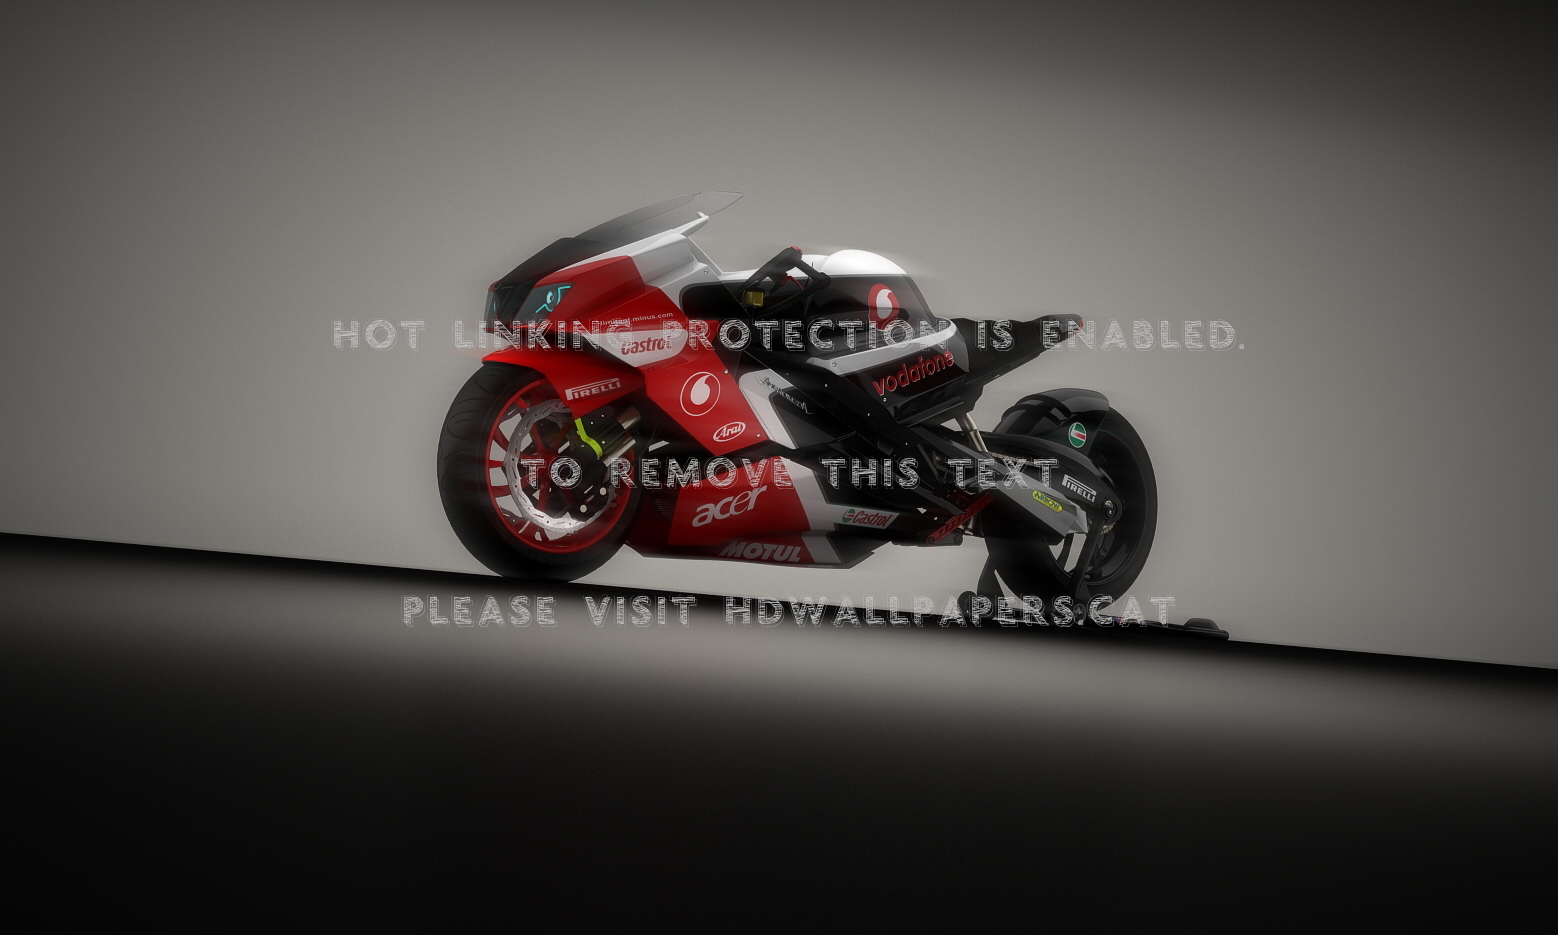 Andromeda Race Gorayko Concept Motogp 3d - Motorcycle - HD Wallpaper 